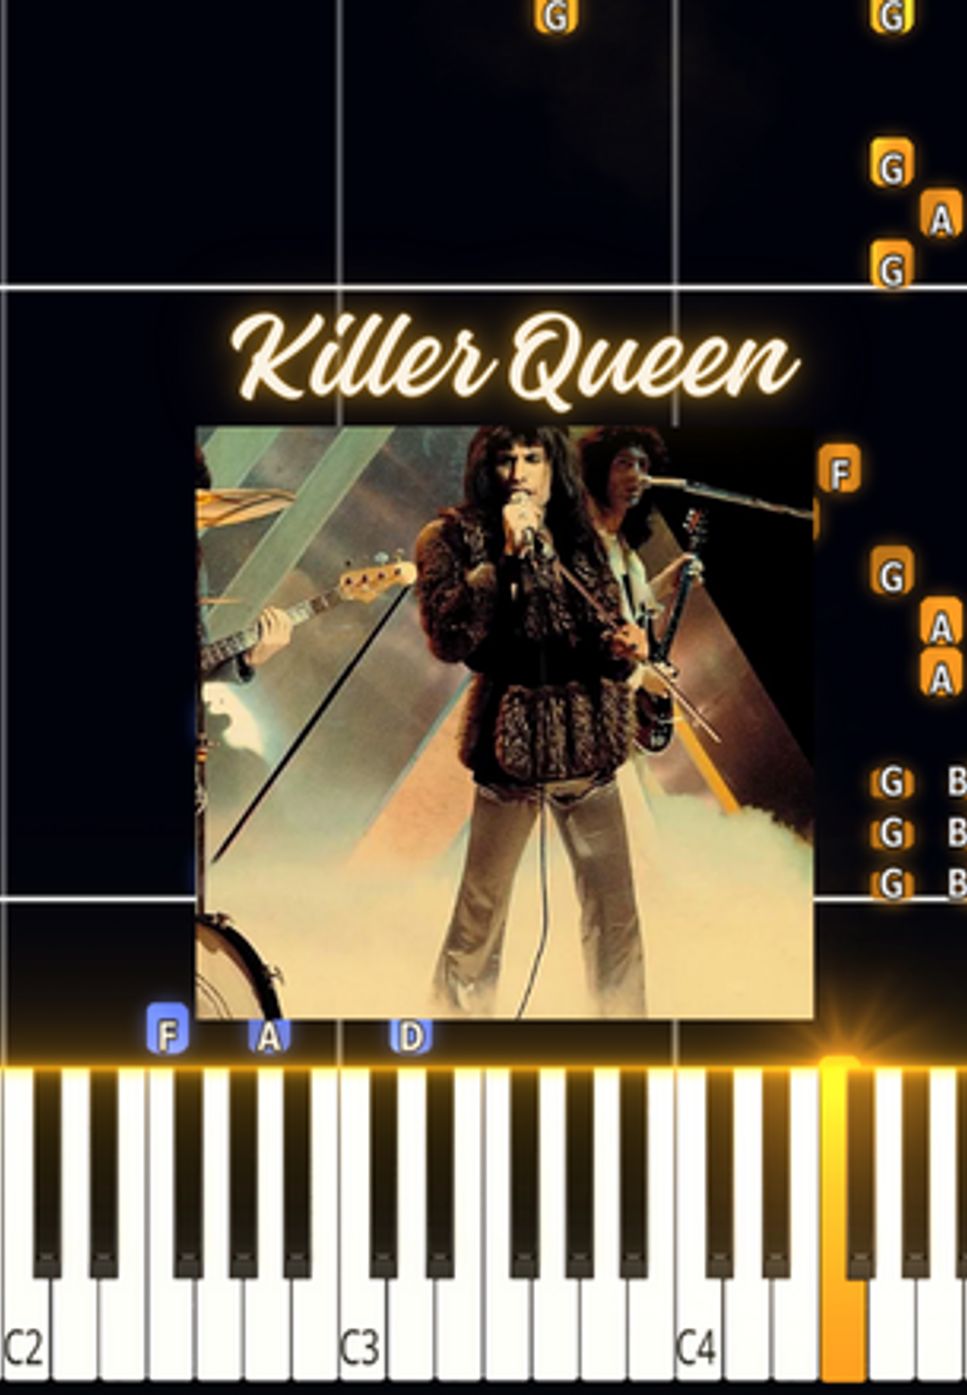 Queen - Killer Queen by Marco D.